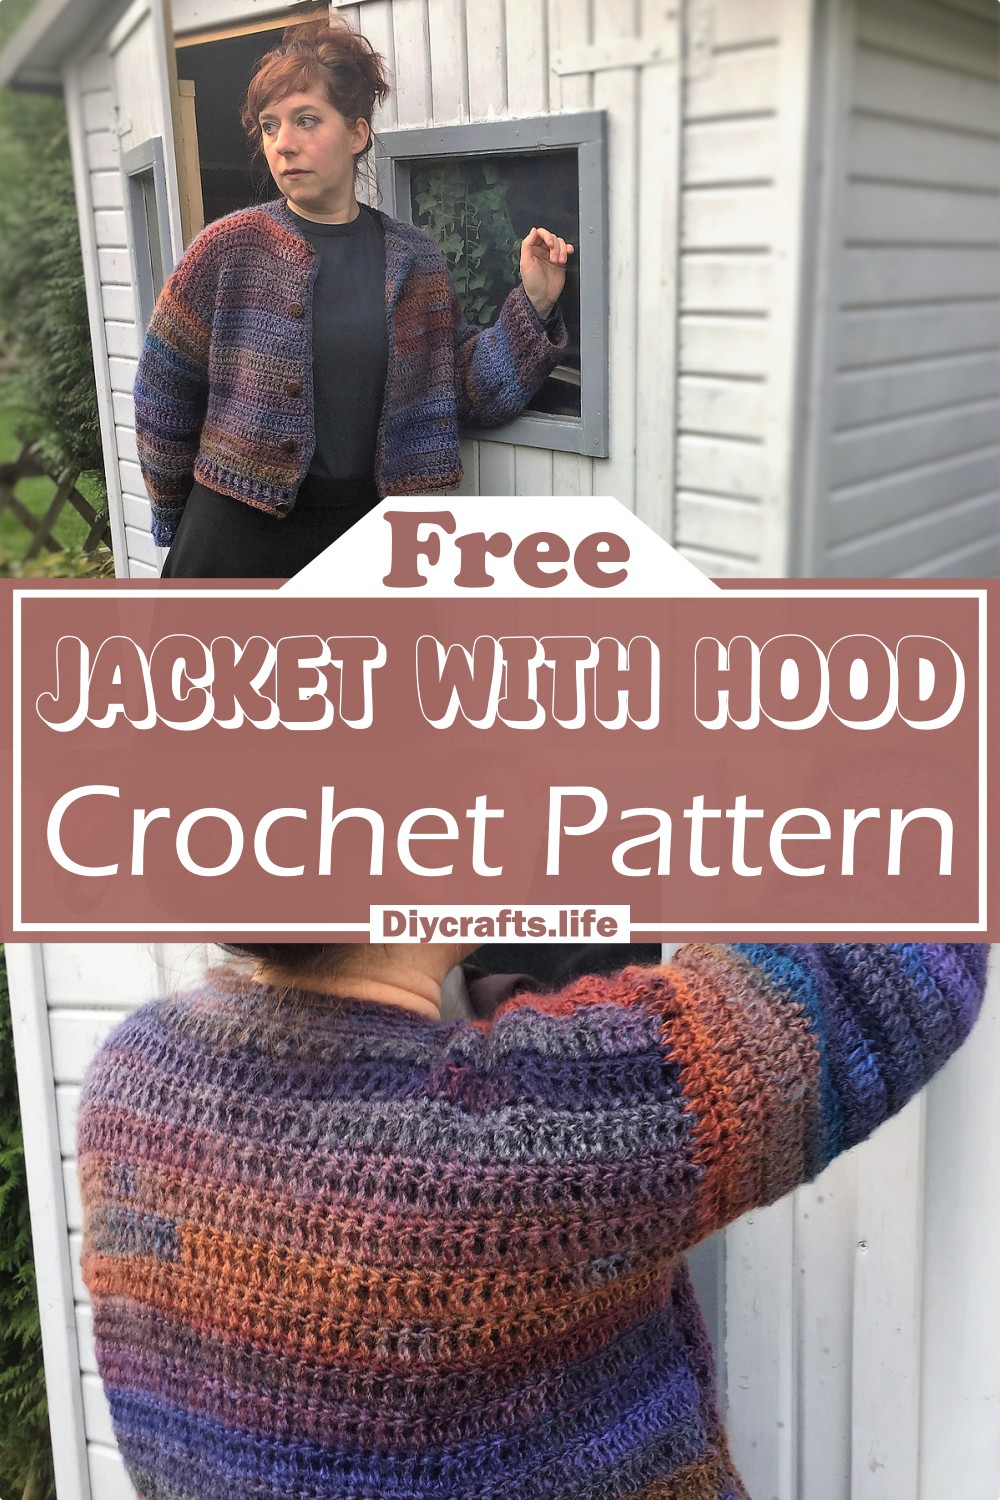 Crochet Jacket With Hood Pattern